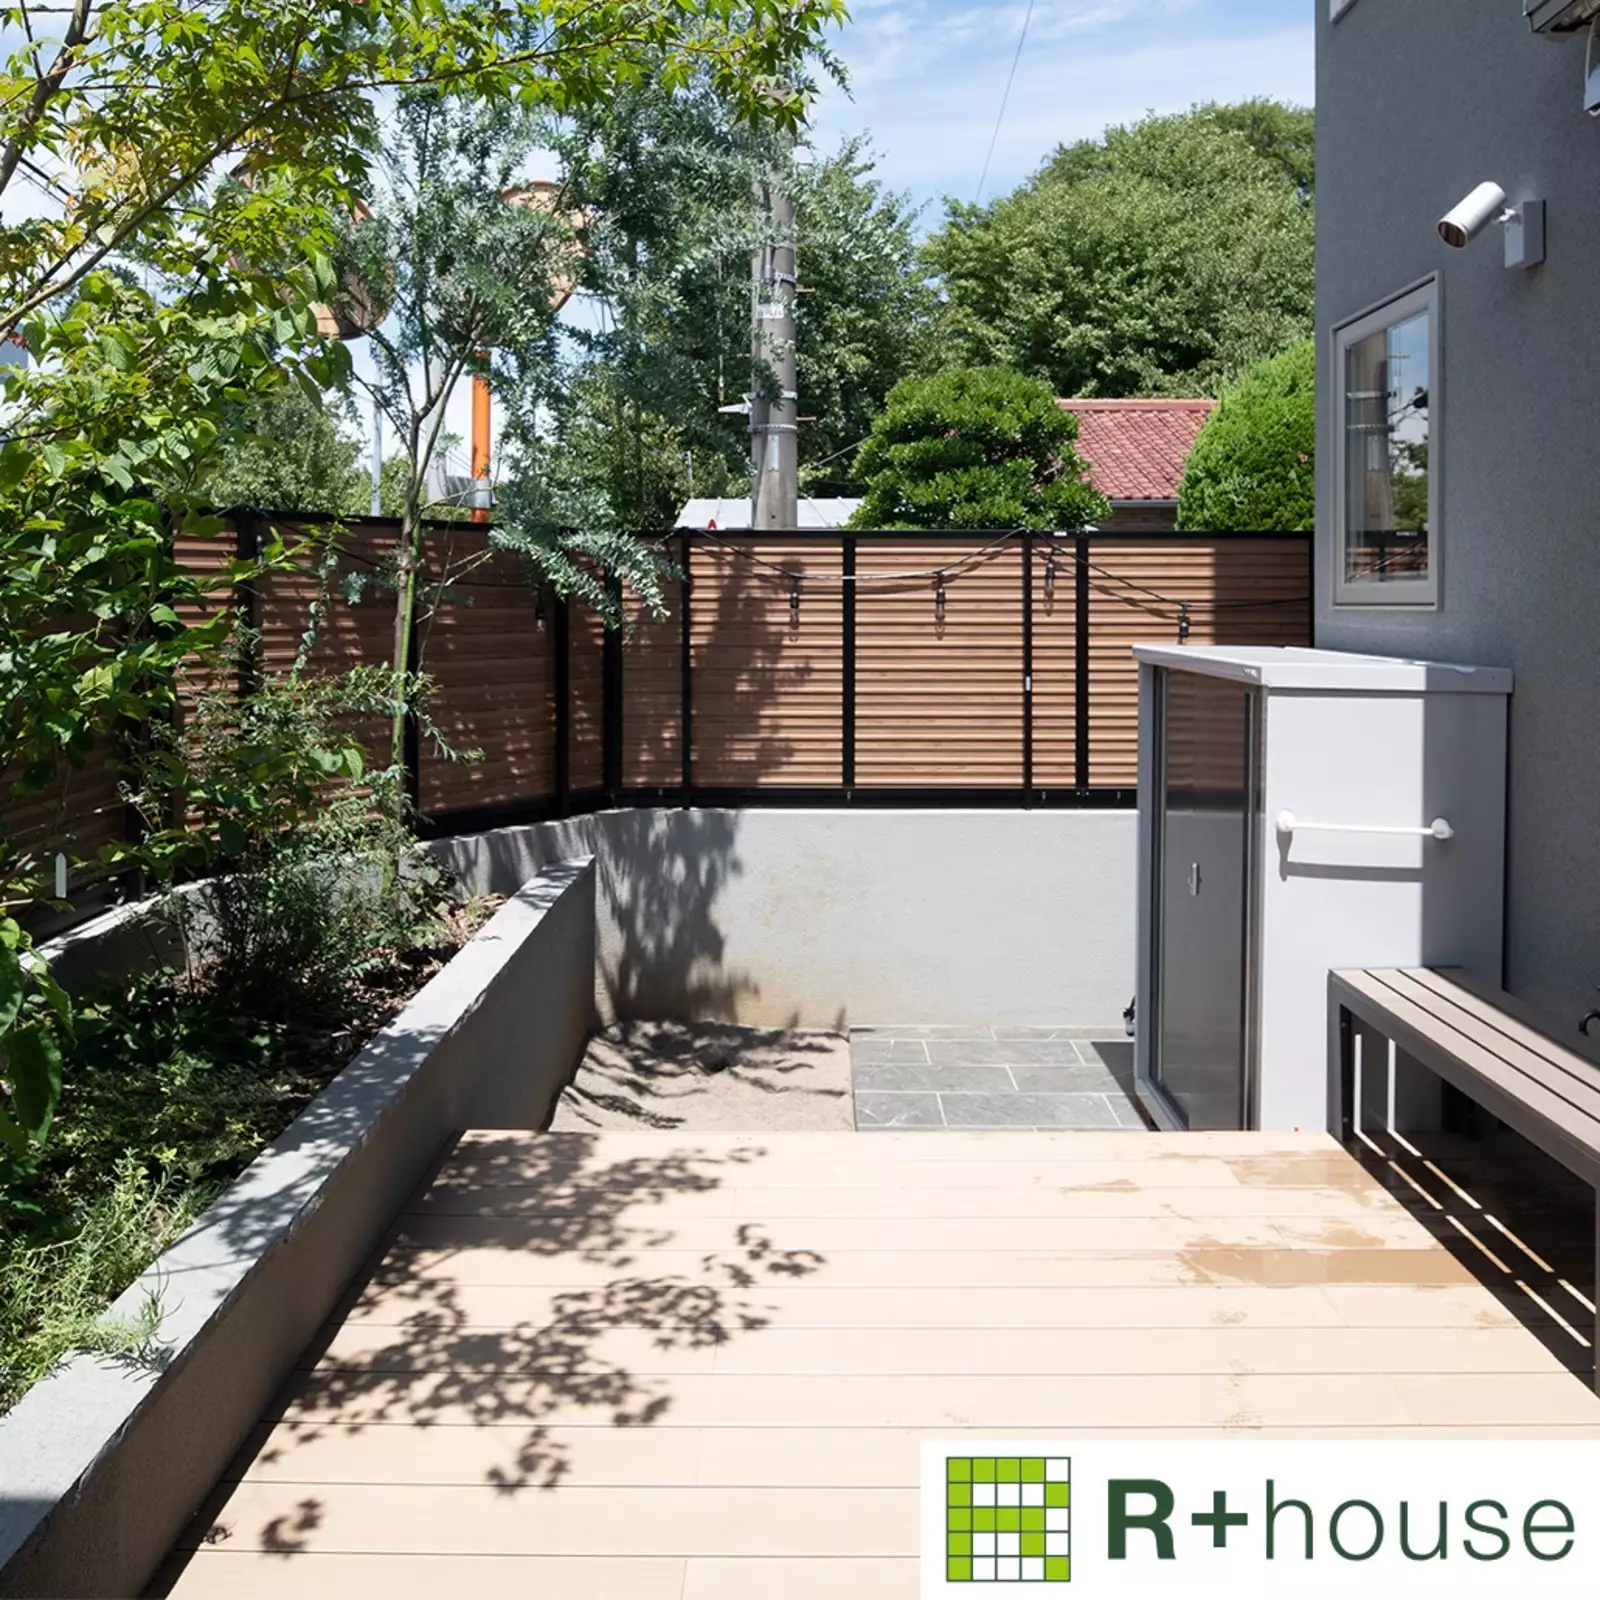 R+houseの物件のウッドデッキの写真です。塀が高く外からは見えないが中からは近隣の緑や空がよく見えるお庭